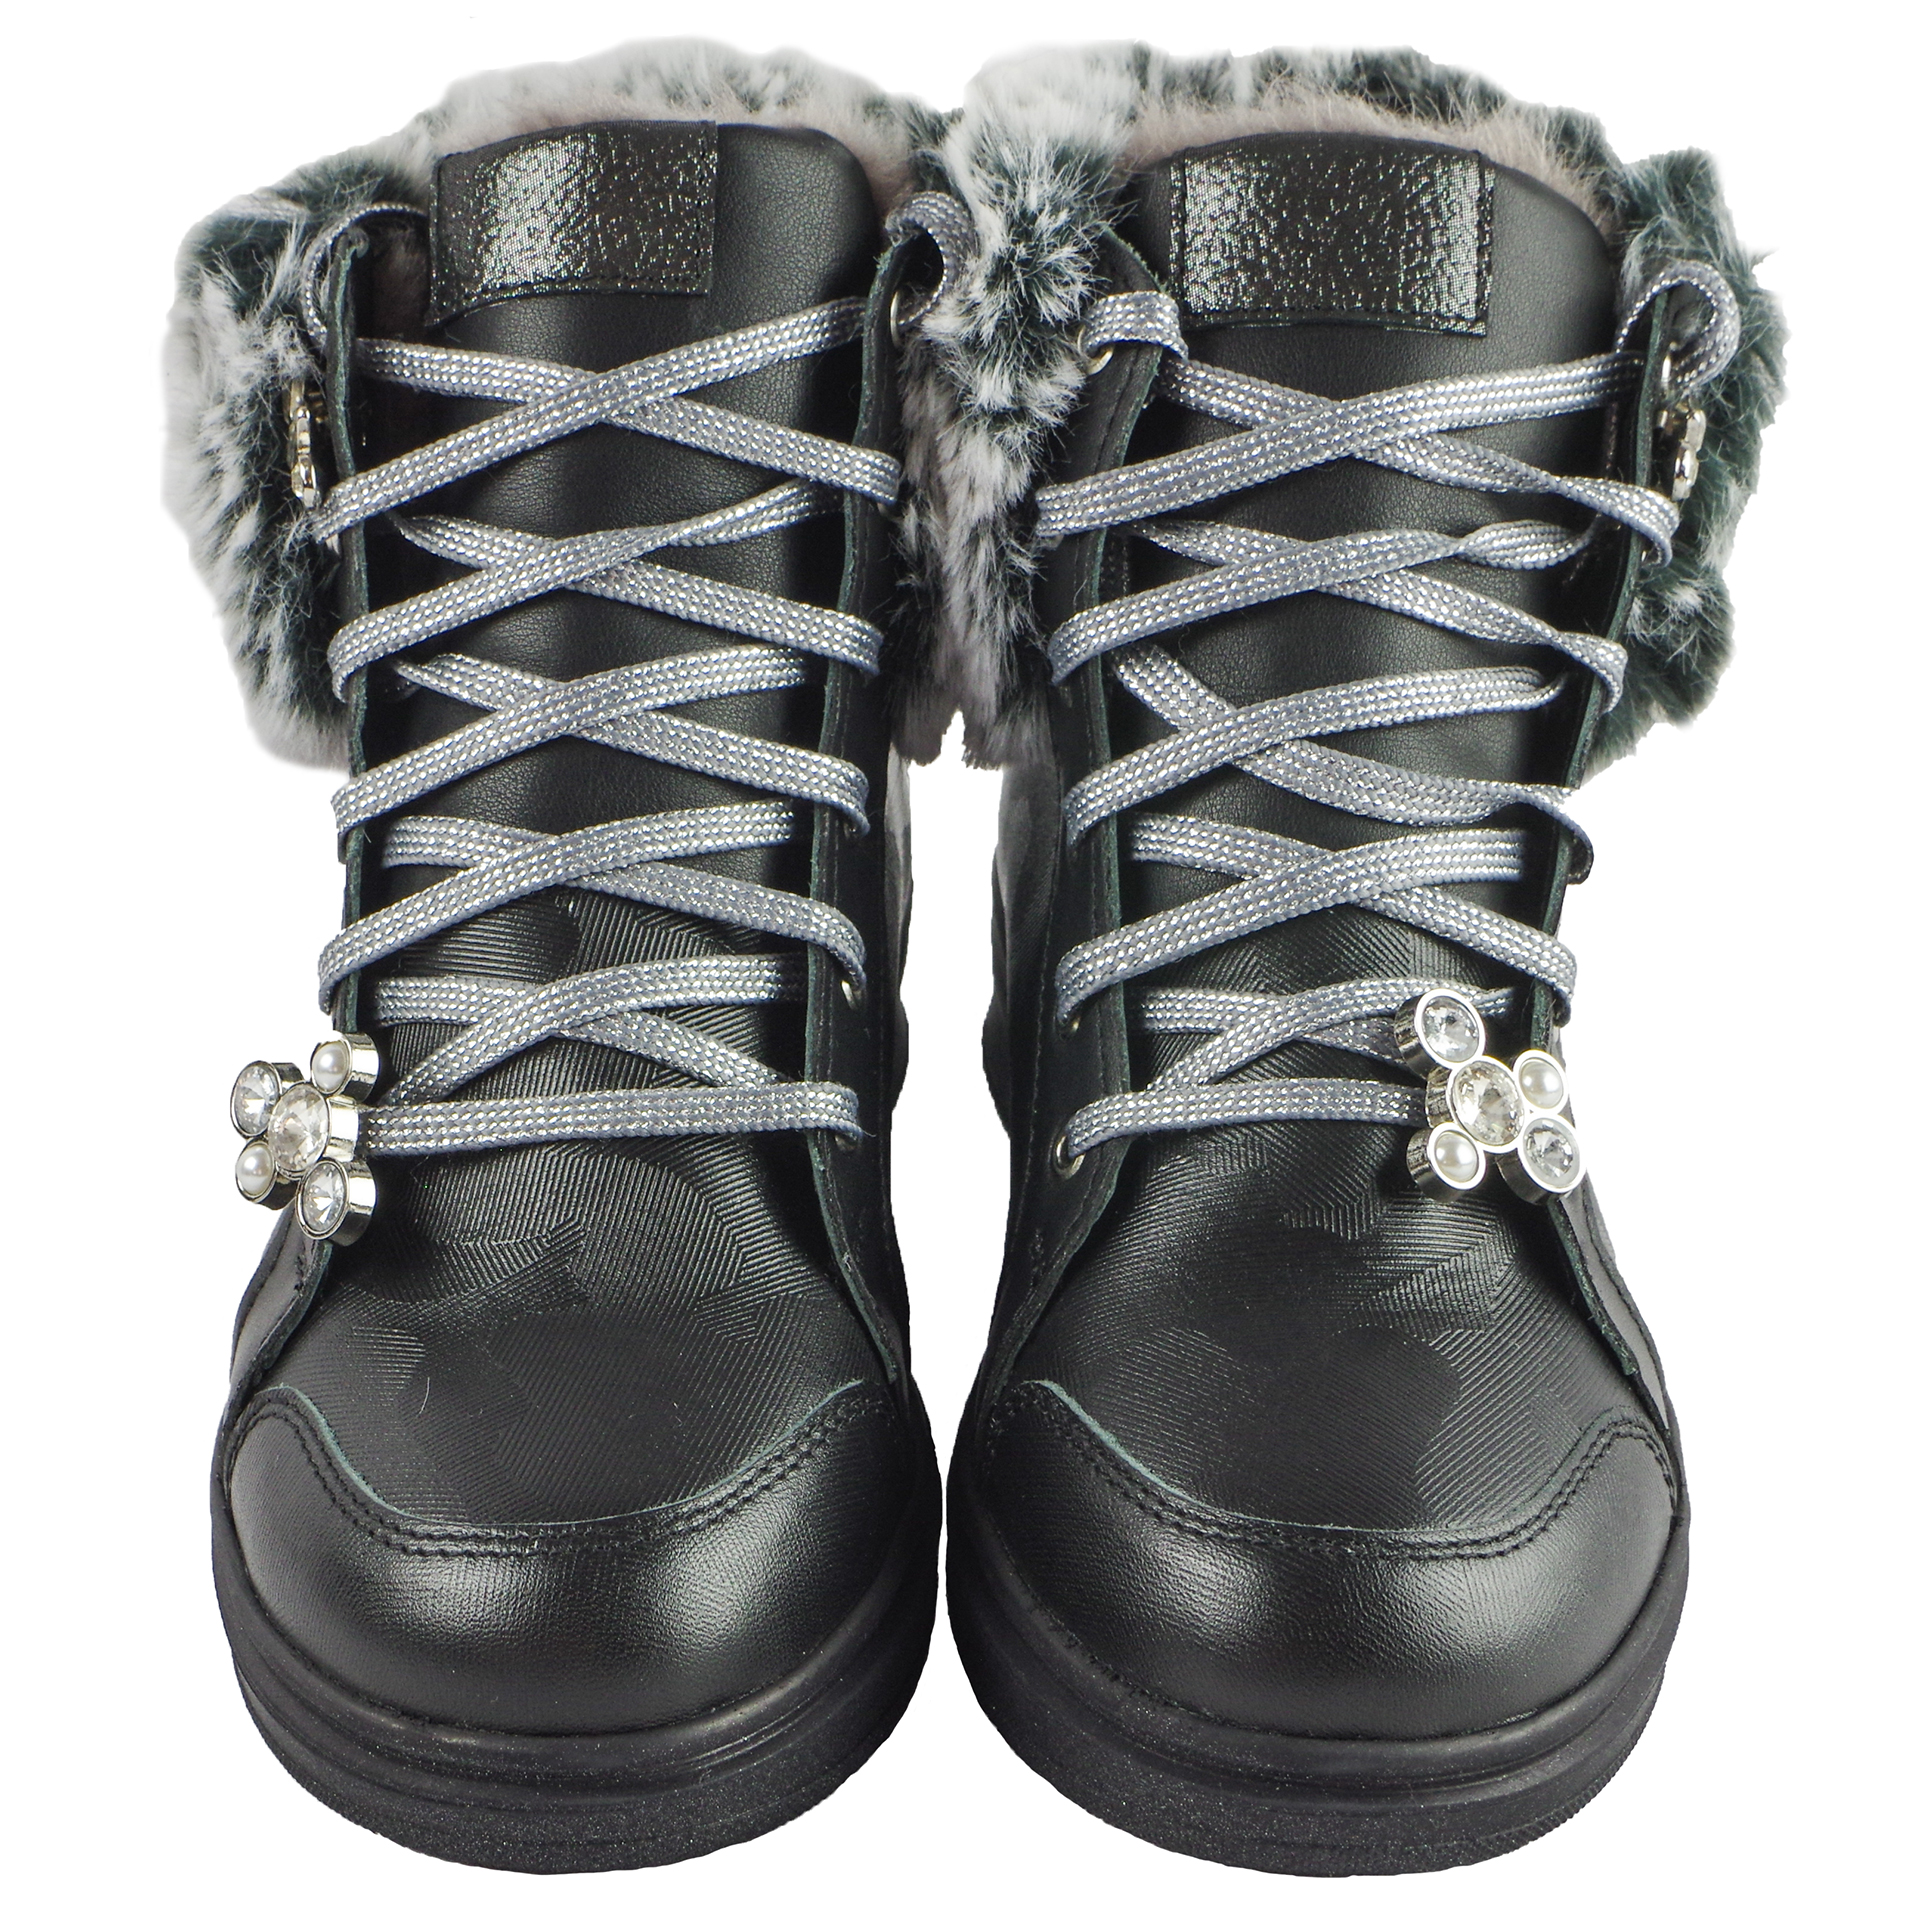 Зимові черевики (1714) для дівчинки, матеріал Натуральна шкіра, Чорний колір, 31-40 розміри – Sole Kids. Фото 3